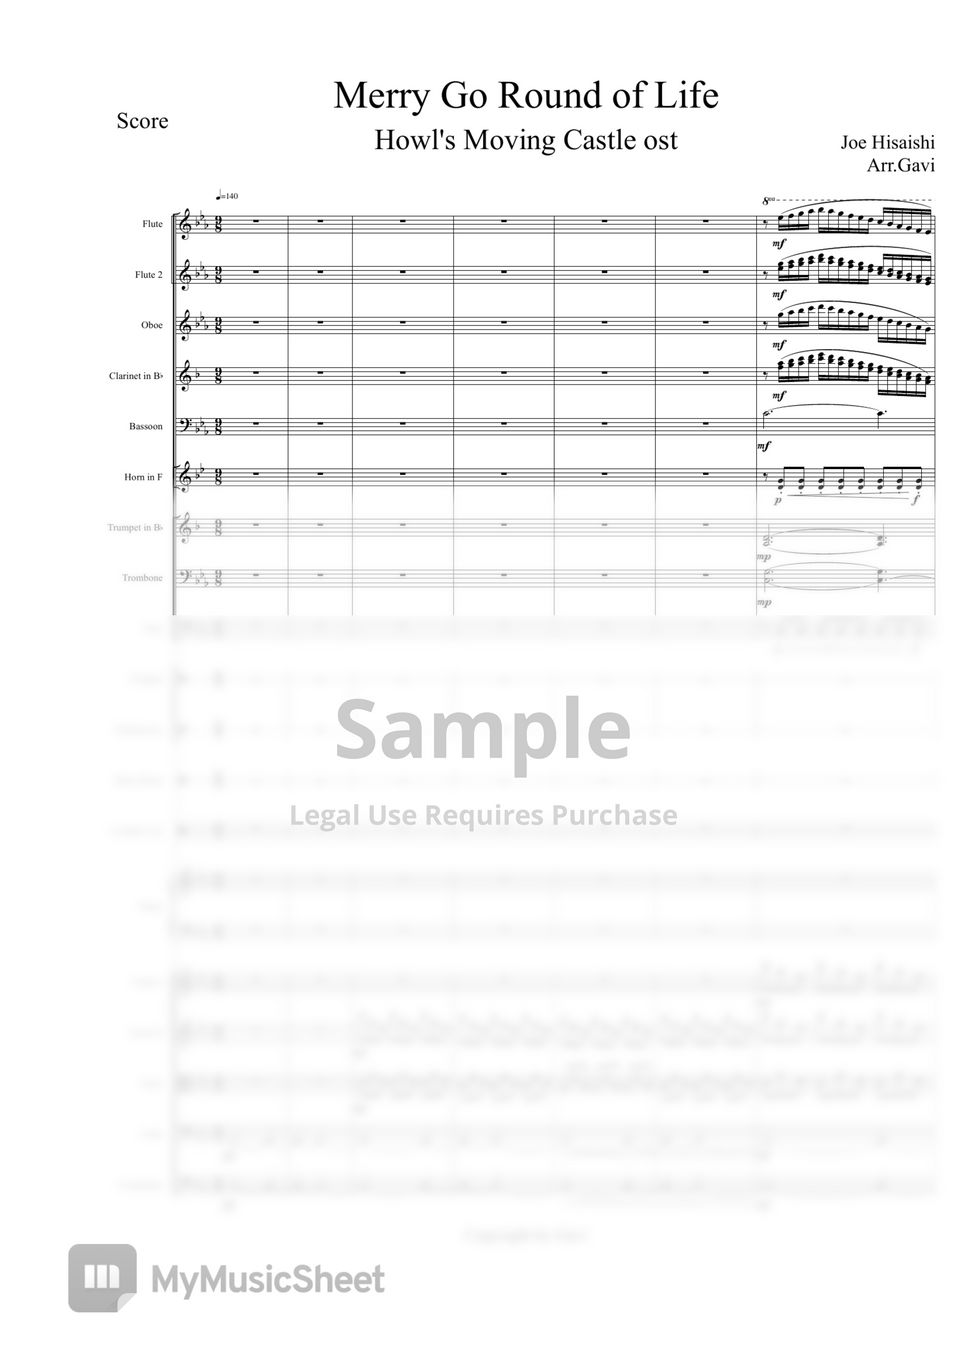 히사이시 조 (Joe Hisaishi) - 인생의 회전목마(Merry Go Round of Life) Orchestra Score by Gavi